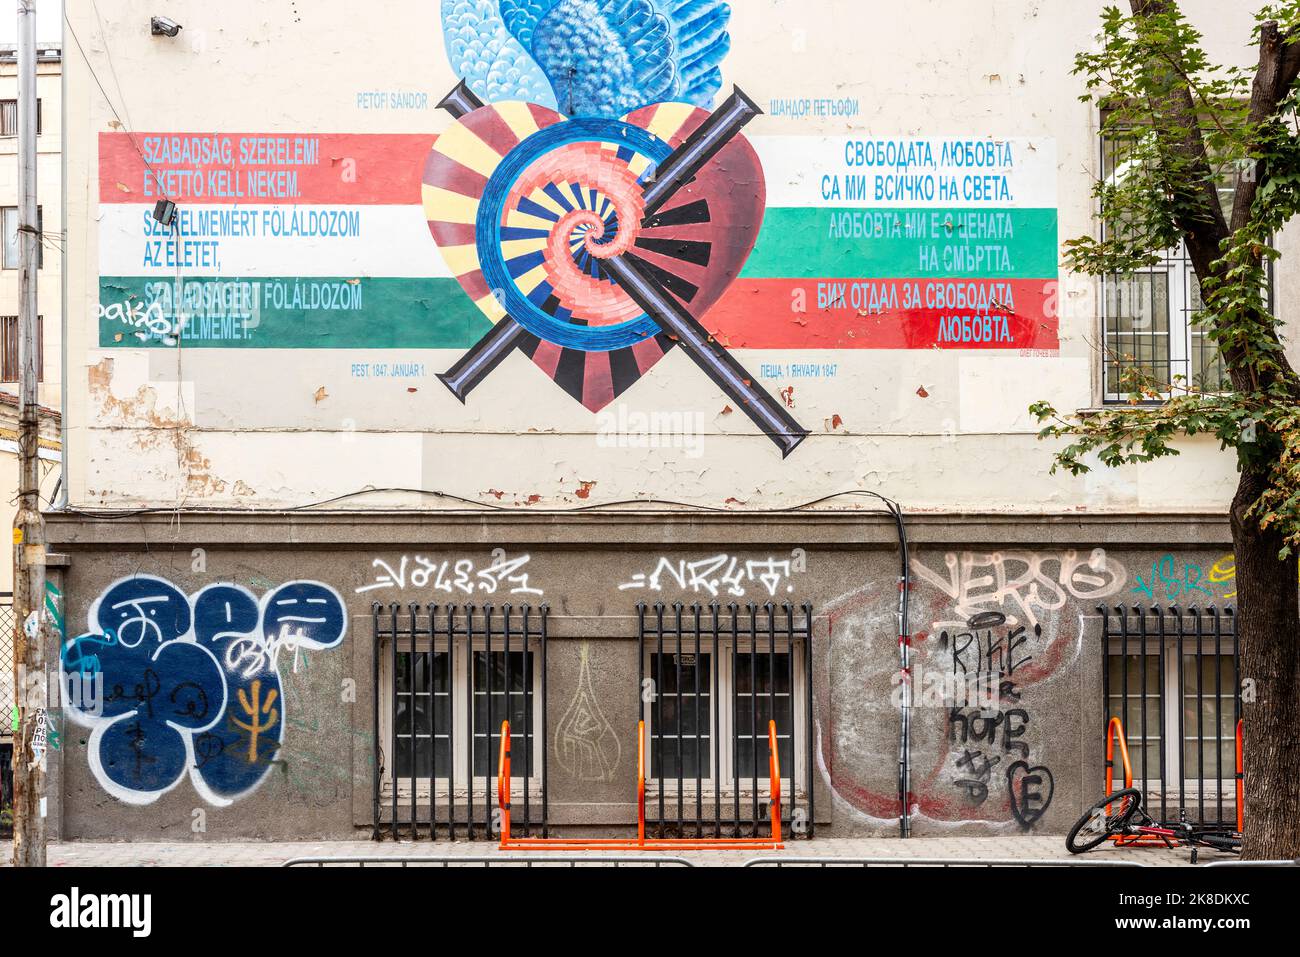 Progetto artistico di poesia da muro a muro 'unità nella diversità' e poesia ungherese di Sándor Petőfi che presenta l'Ungheria a Sofia, Bulgaria, Balcani, UE Foto Stock